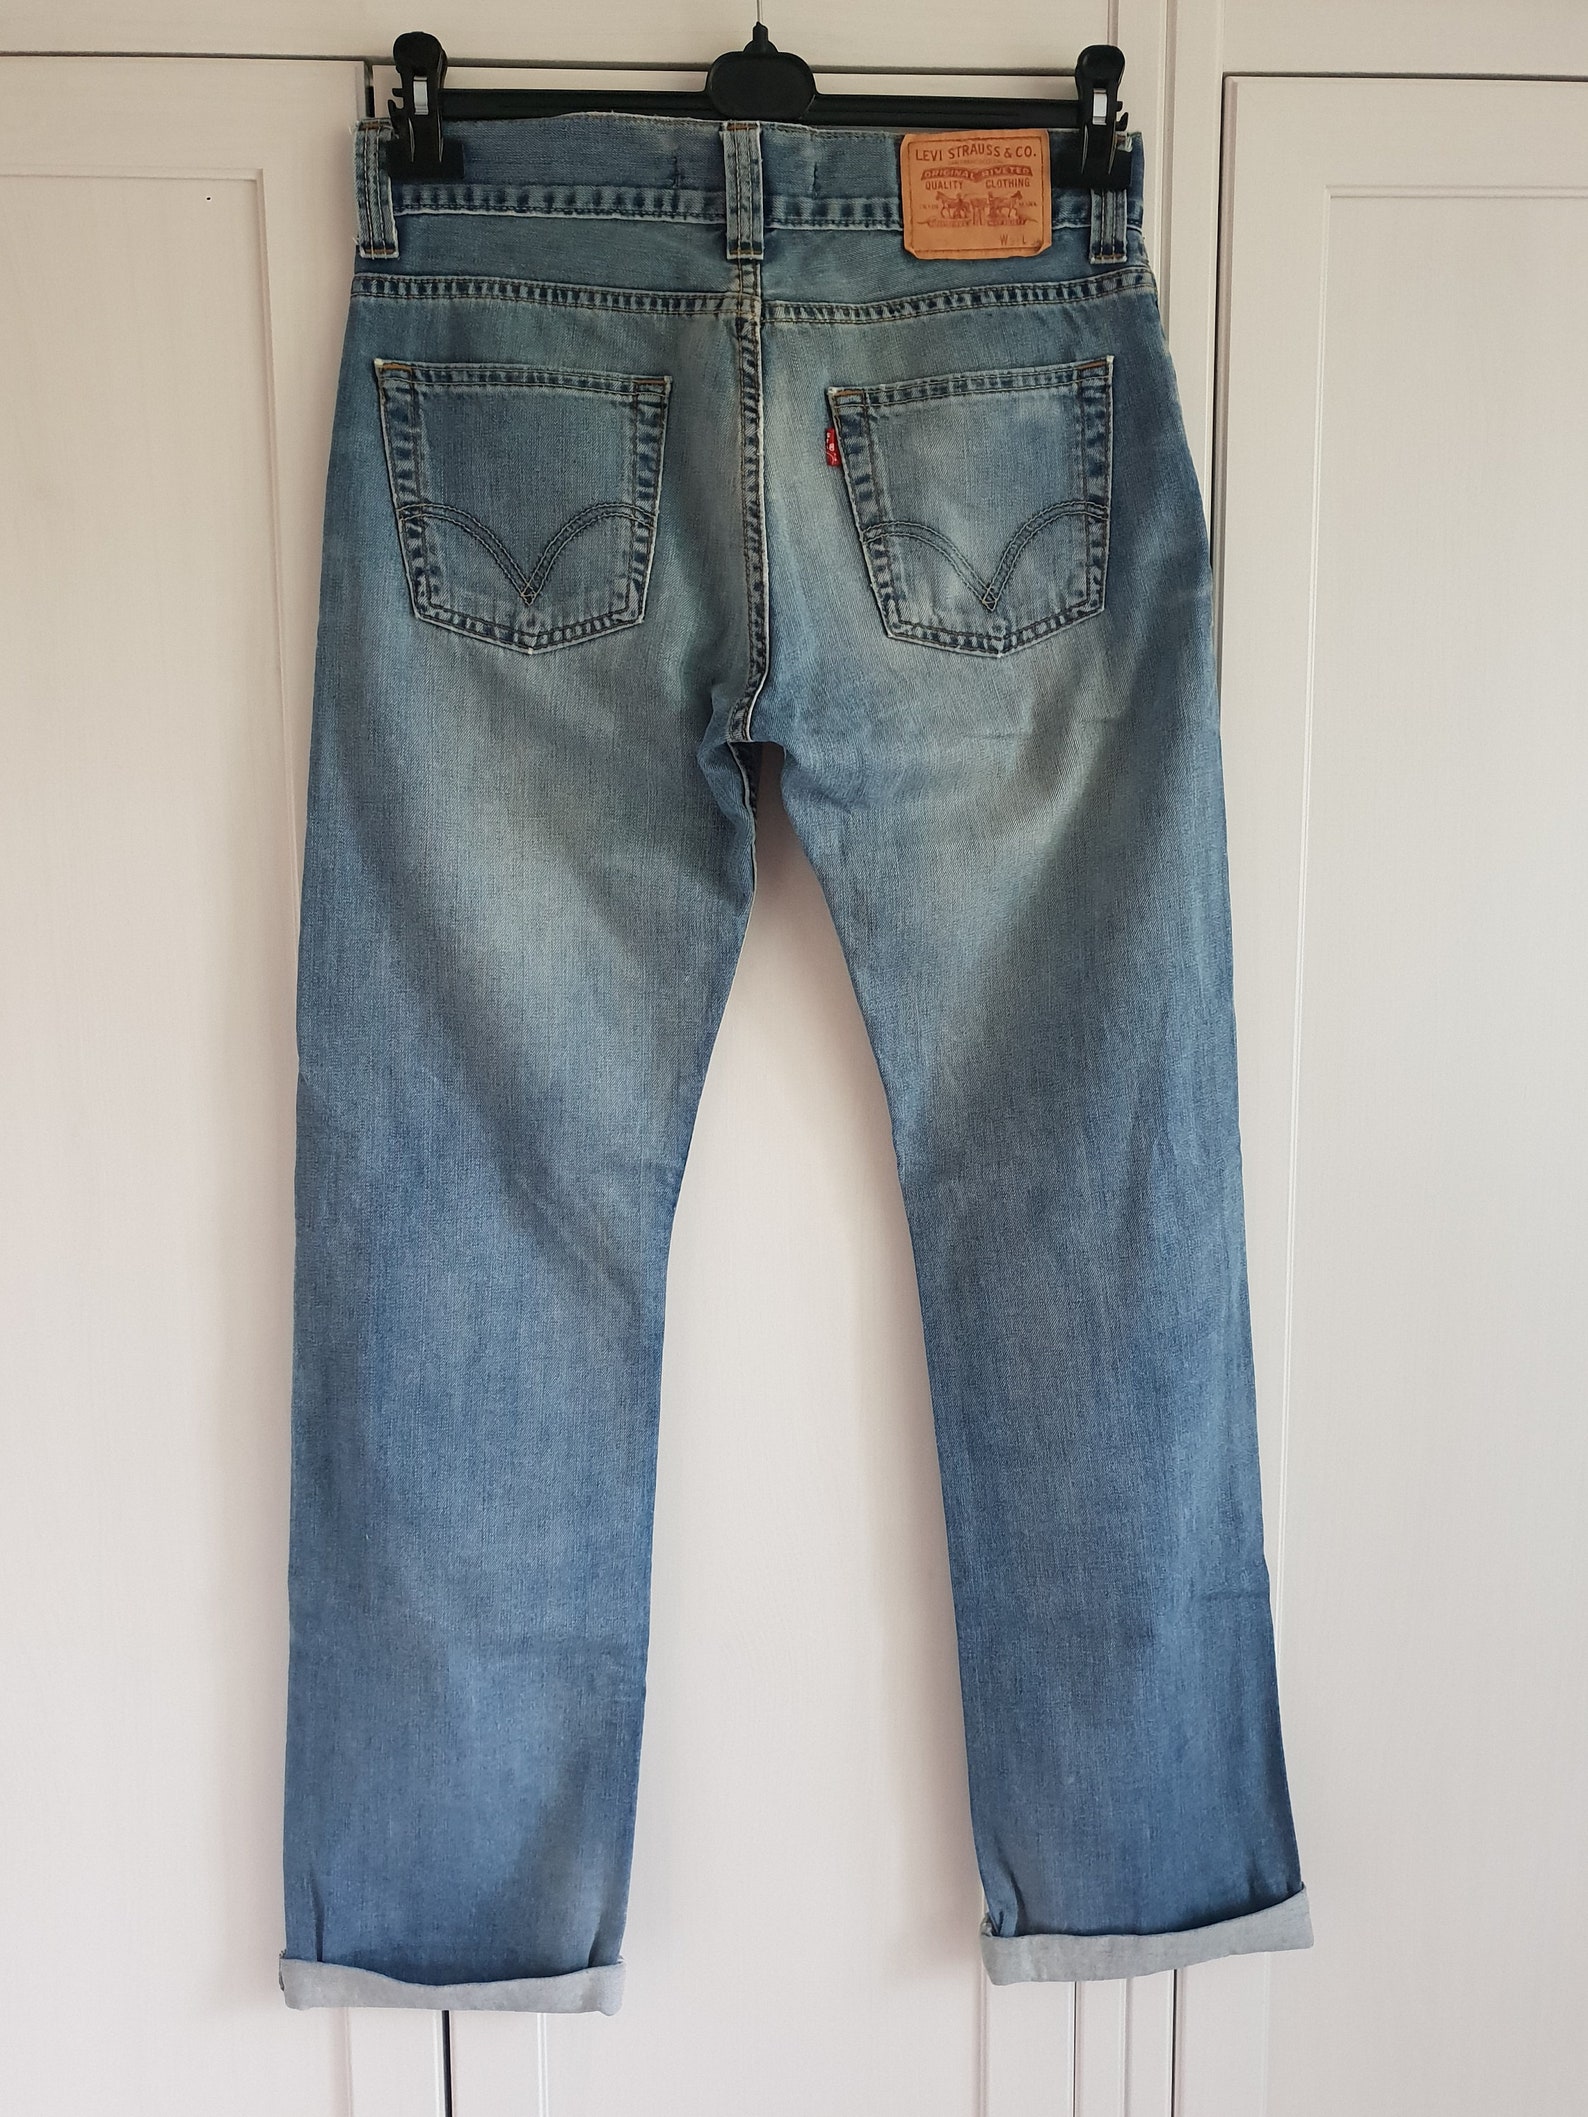 Vintage Levis 506 Jeans Blue Denim Jeans Levi's Pants Men | Etsy